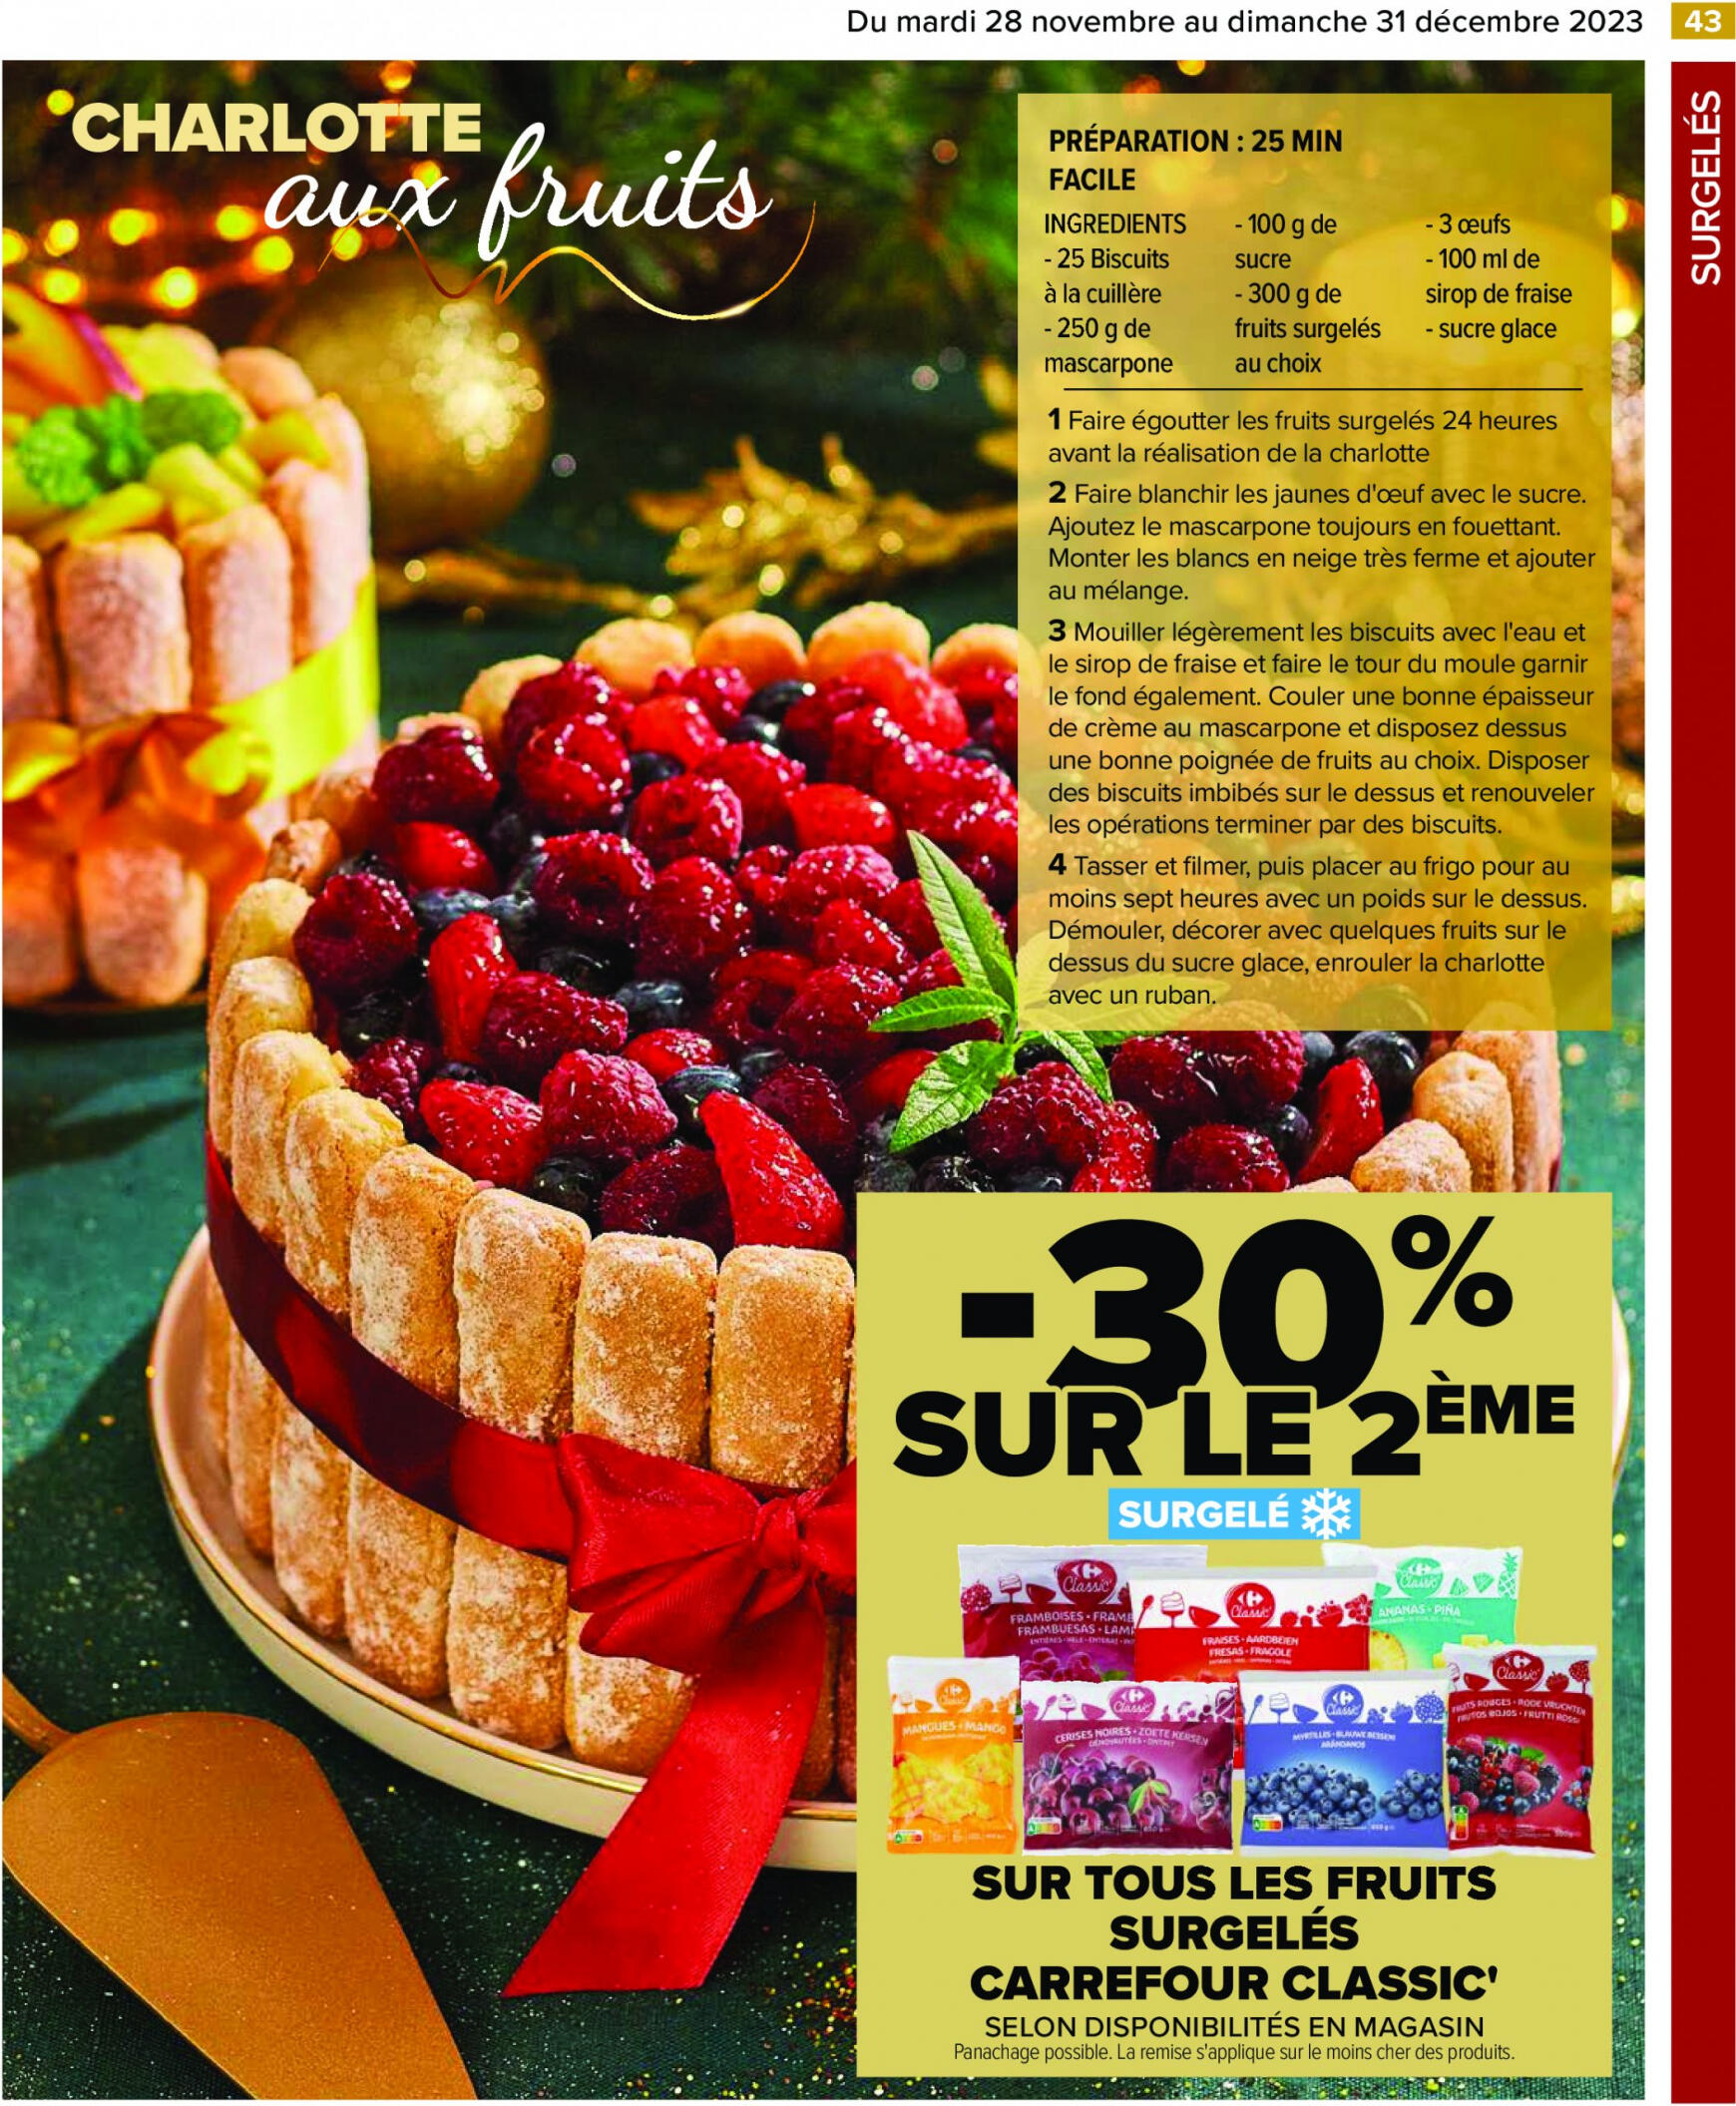 carrefour - Carrefour - Un Noël extra à prix ordinaire - GUIDE CULINAIRE valable à partir de 28.11.2023 - page: 45